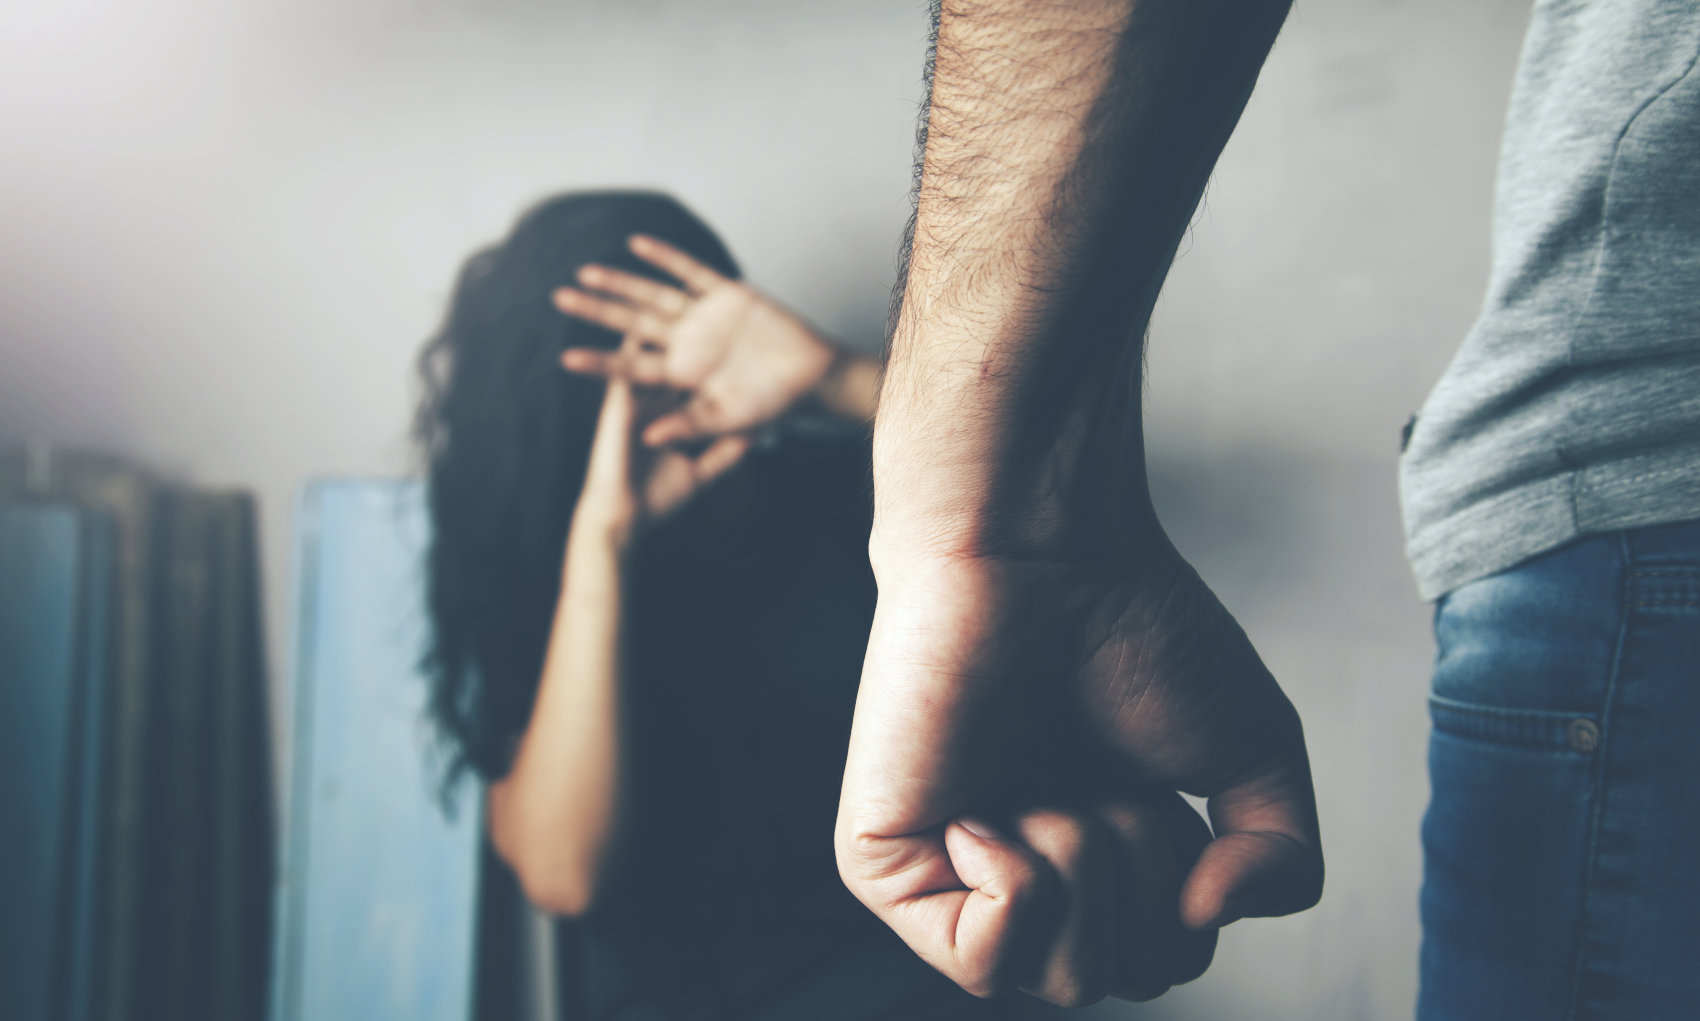 Εφιάλτης για 22χρονη στον Βόλο: Την κρατούσε έγκλειστη μαζί με το 2 ετών παιδί τους – Την κακοποιούσε καθημερινά και προσπάθησε να τη στραγγαλίσει